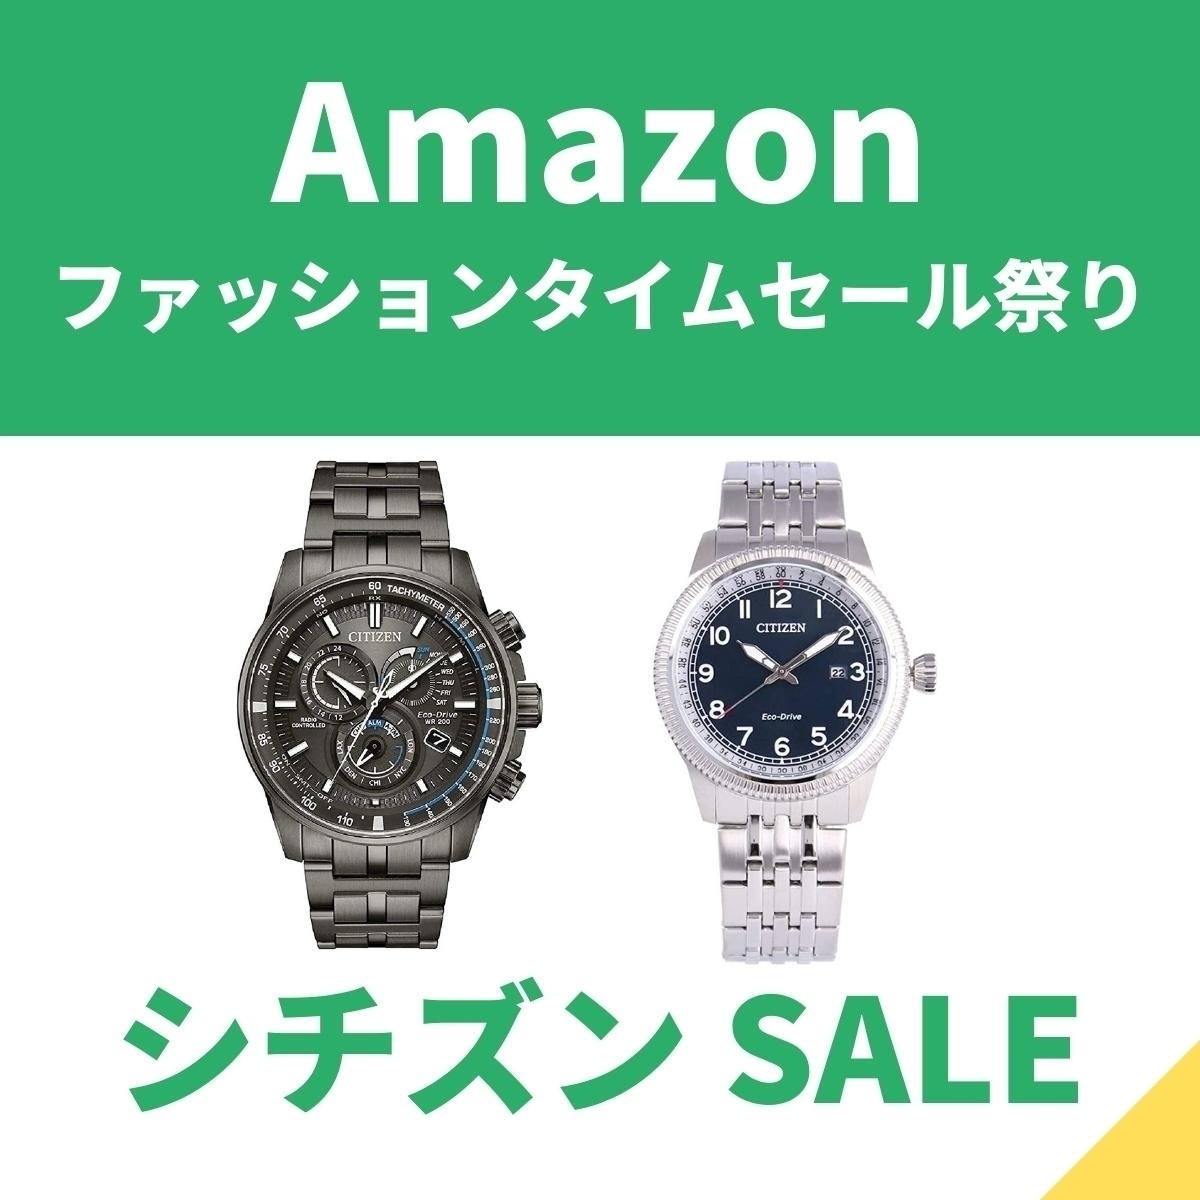 シチズンの腕時計が3日間限定特価！ 在庫少ないから急いで【Amazonファッションタイムセール祭り】 - エキサイトニュース